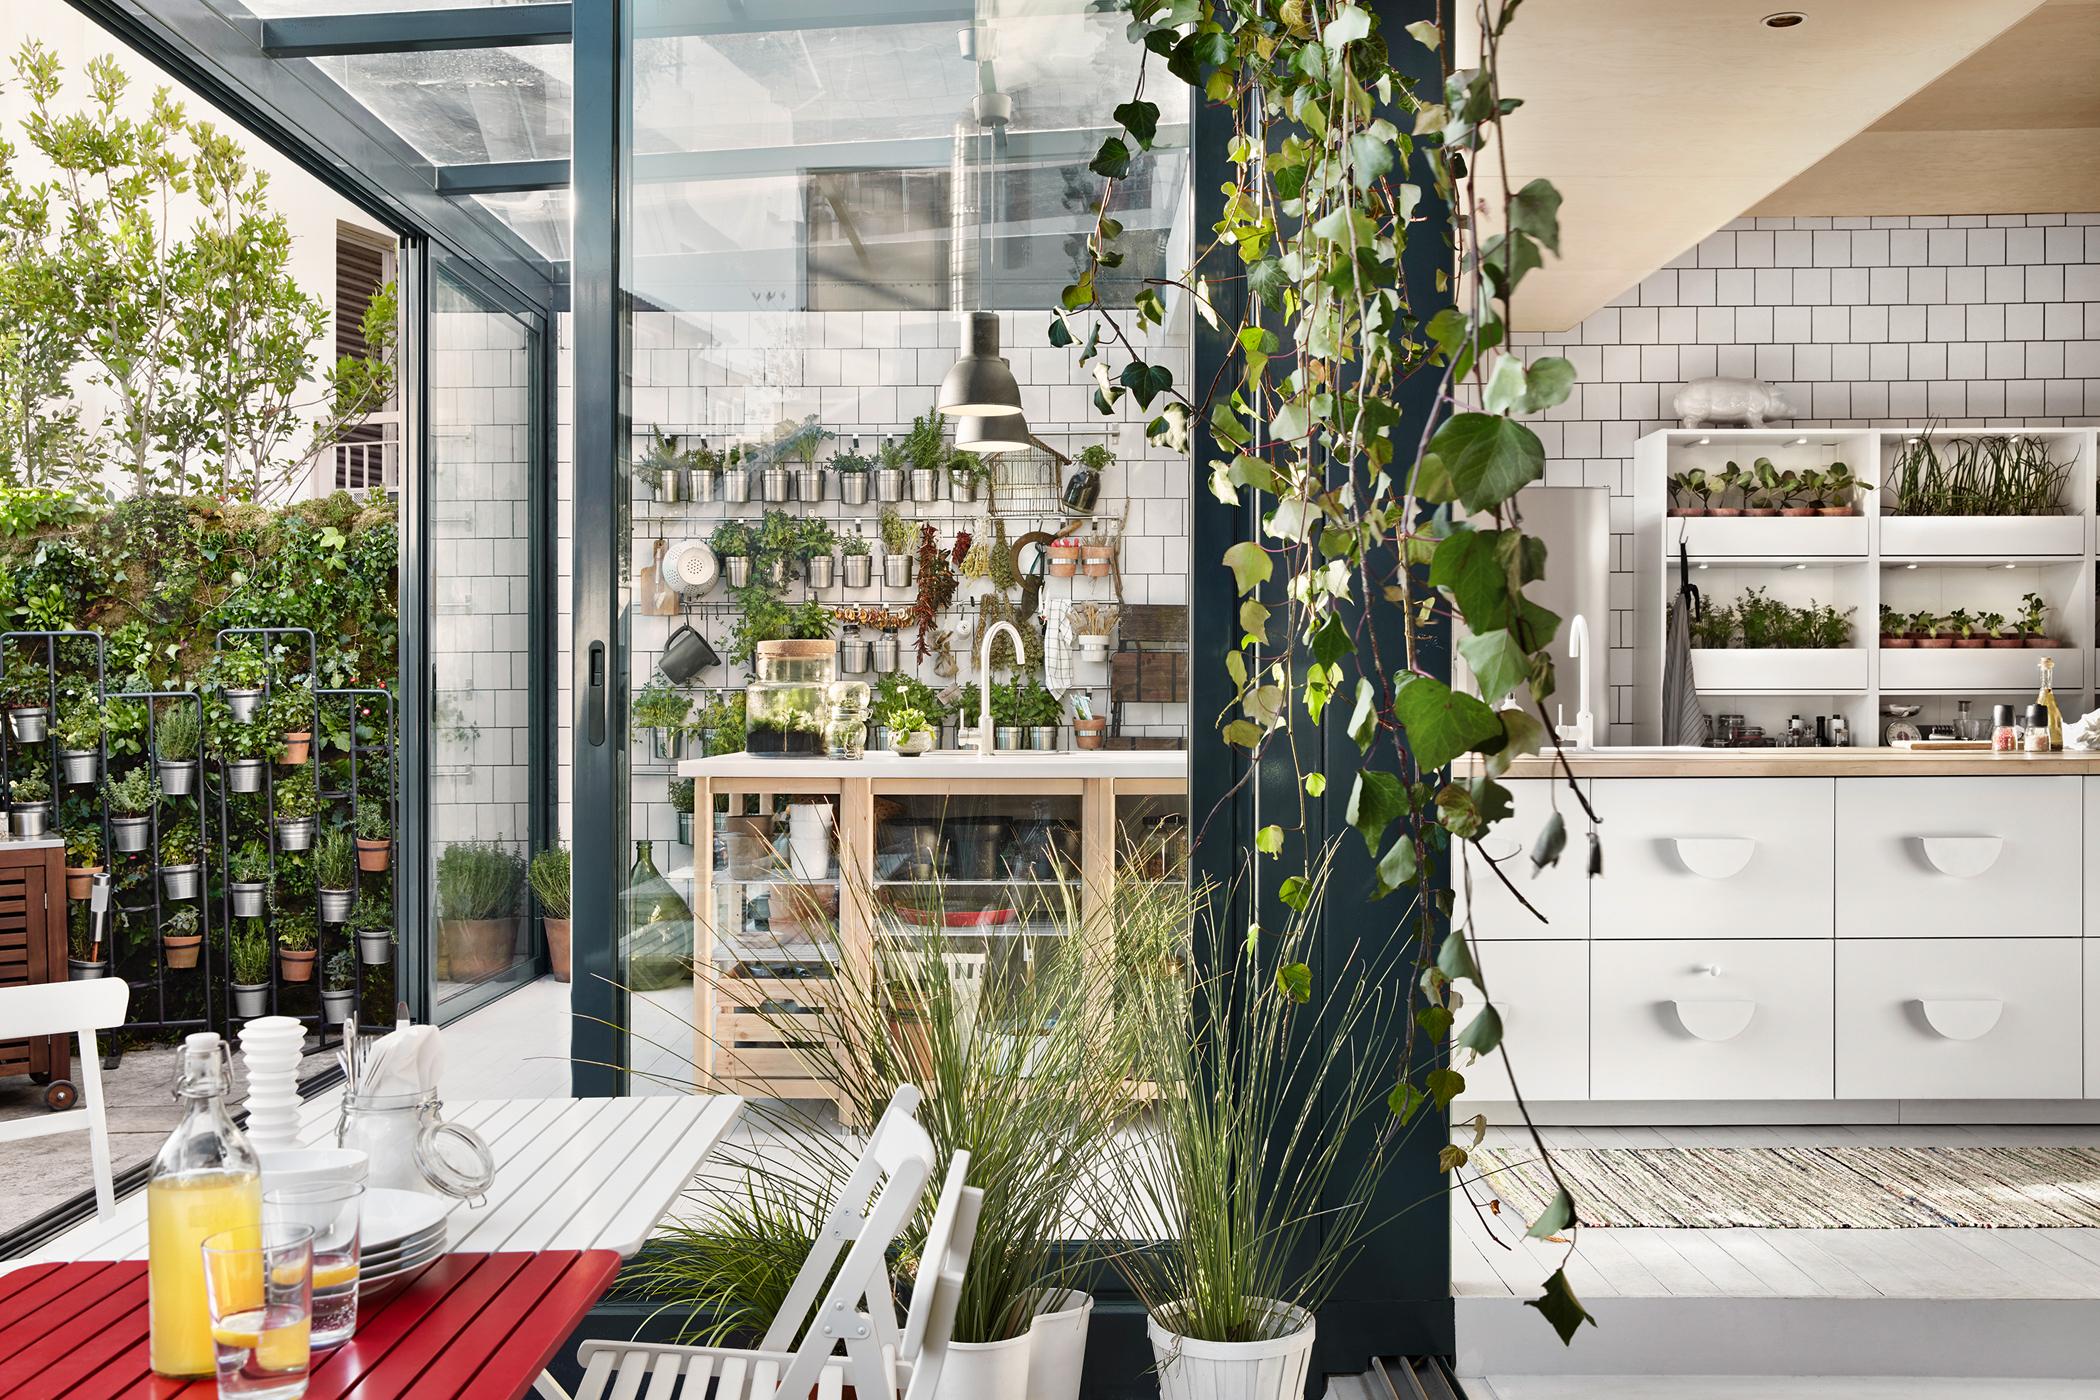 Küche mit Zimmerpflanzen dekorieren #stuhl #terrasse #esstisch #ikea #weißerstuhl #zimmerpflanze #zimmergestaltung ©Inter IKEA Systems B.V.